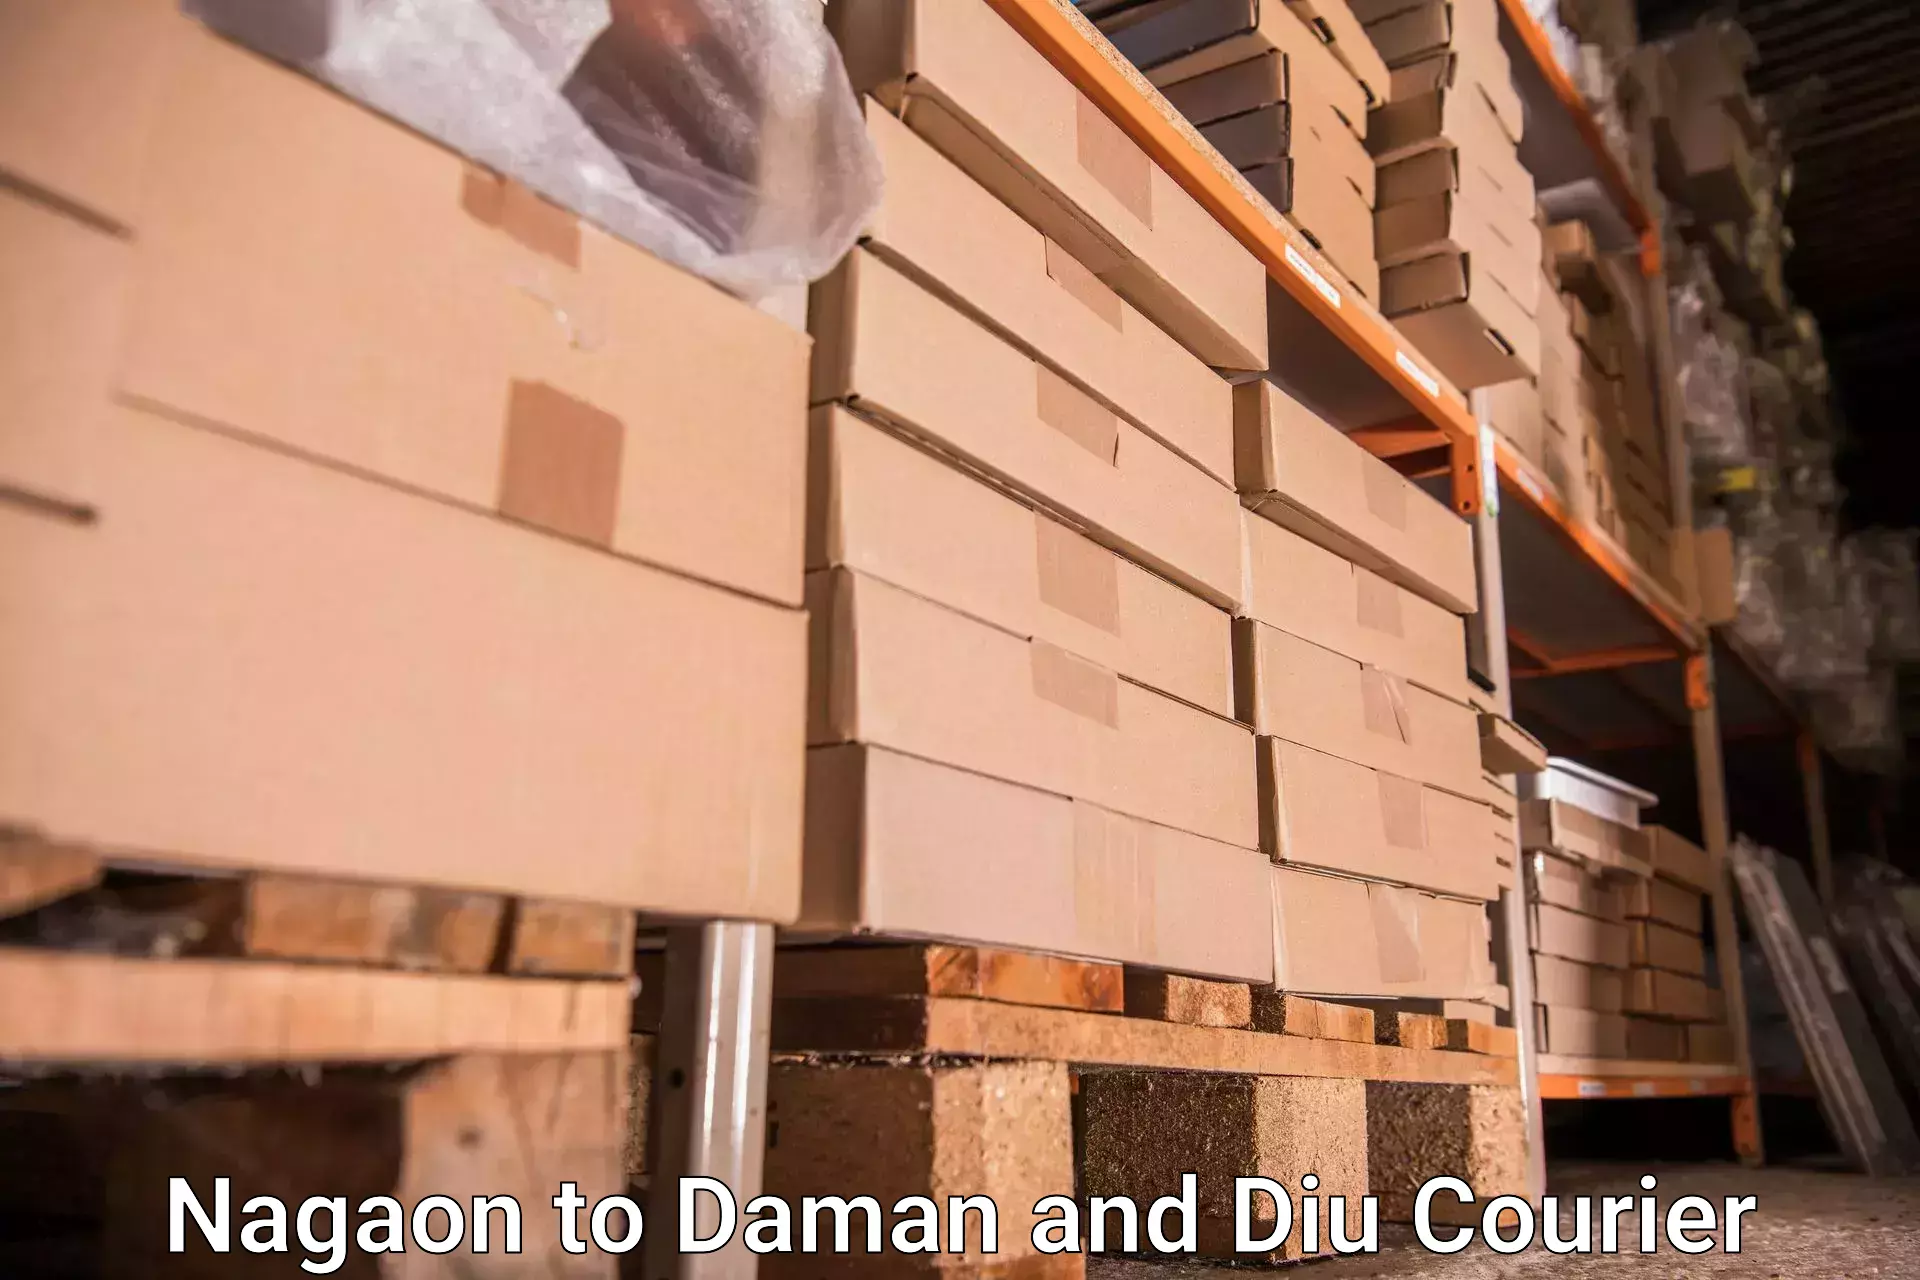 Baggage handling services Nagaon to Daman and Diu